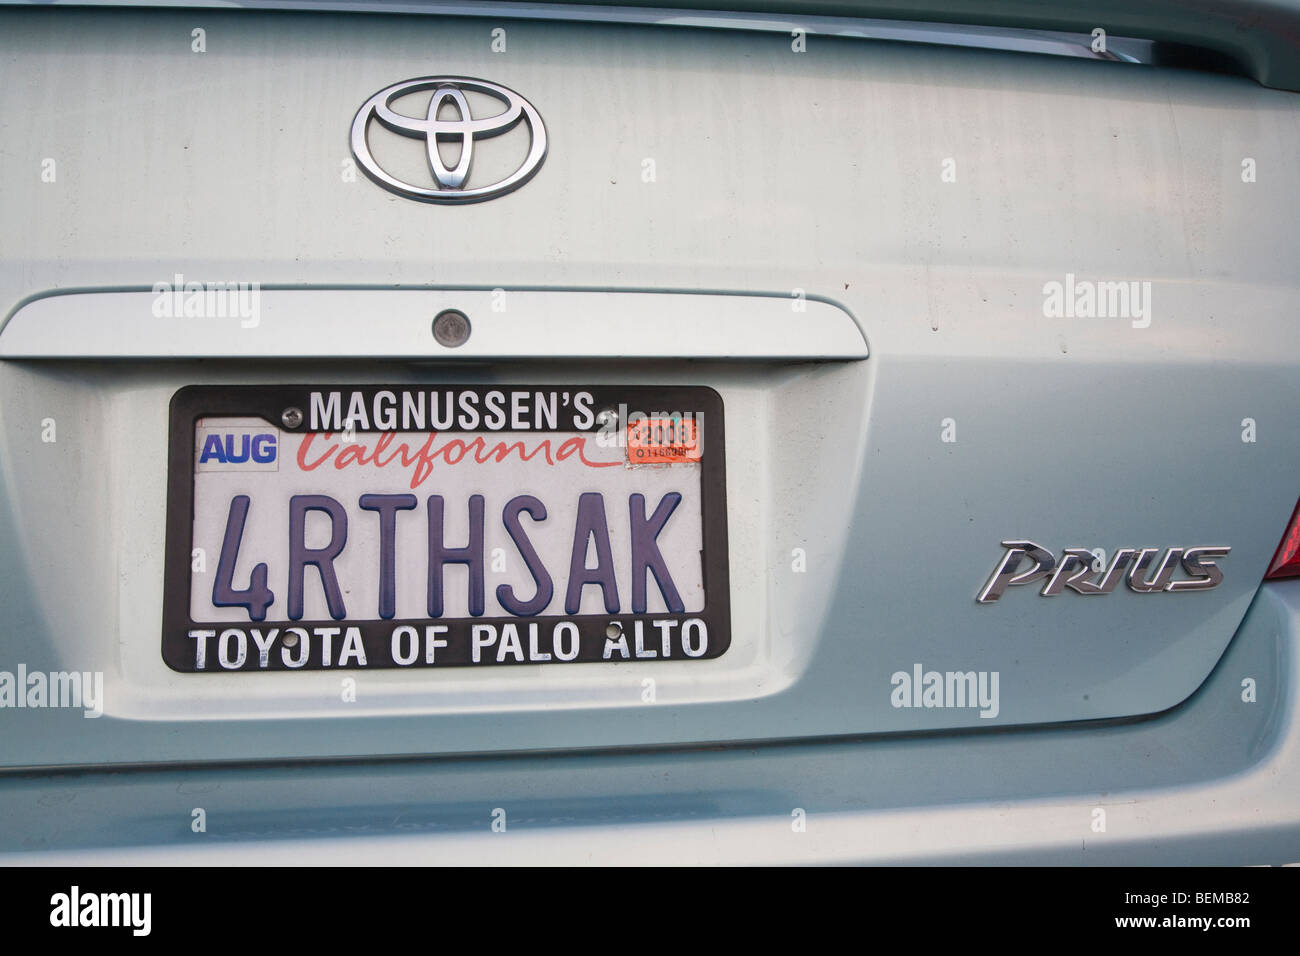 Eine Nahaufnahme von "4RTHSAK" (der Erde zuliebe) benutzerdefinierte Platte auf einem grauen Toyota Prius Hybrid-Auto. Kalifornien, USA Stockfoto